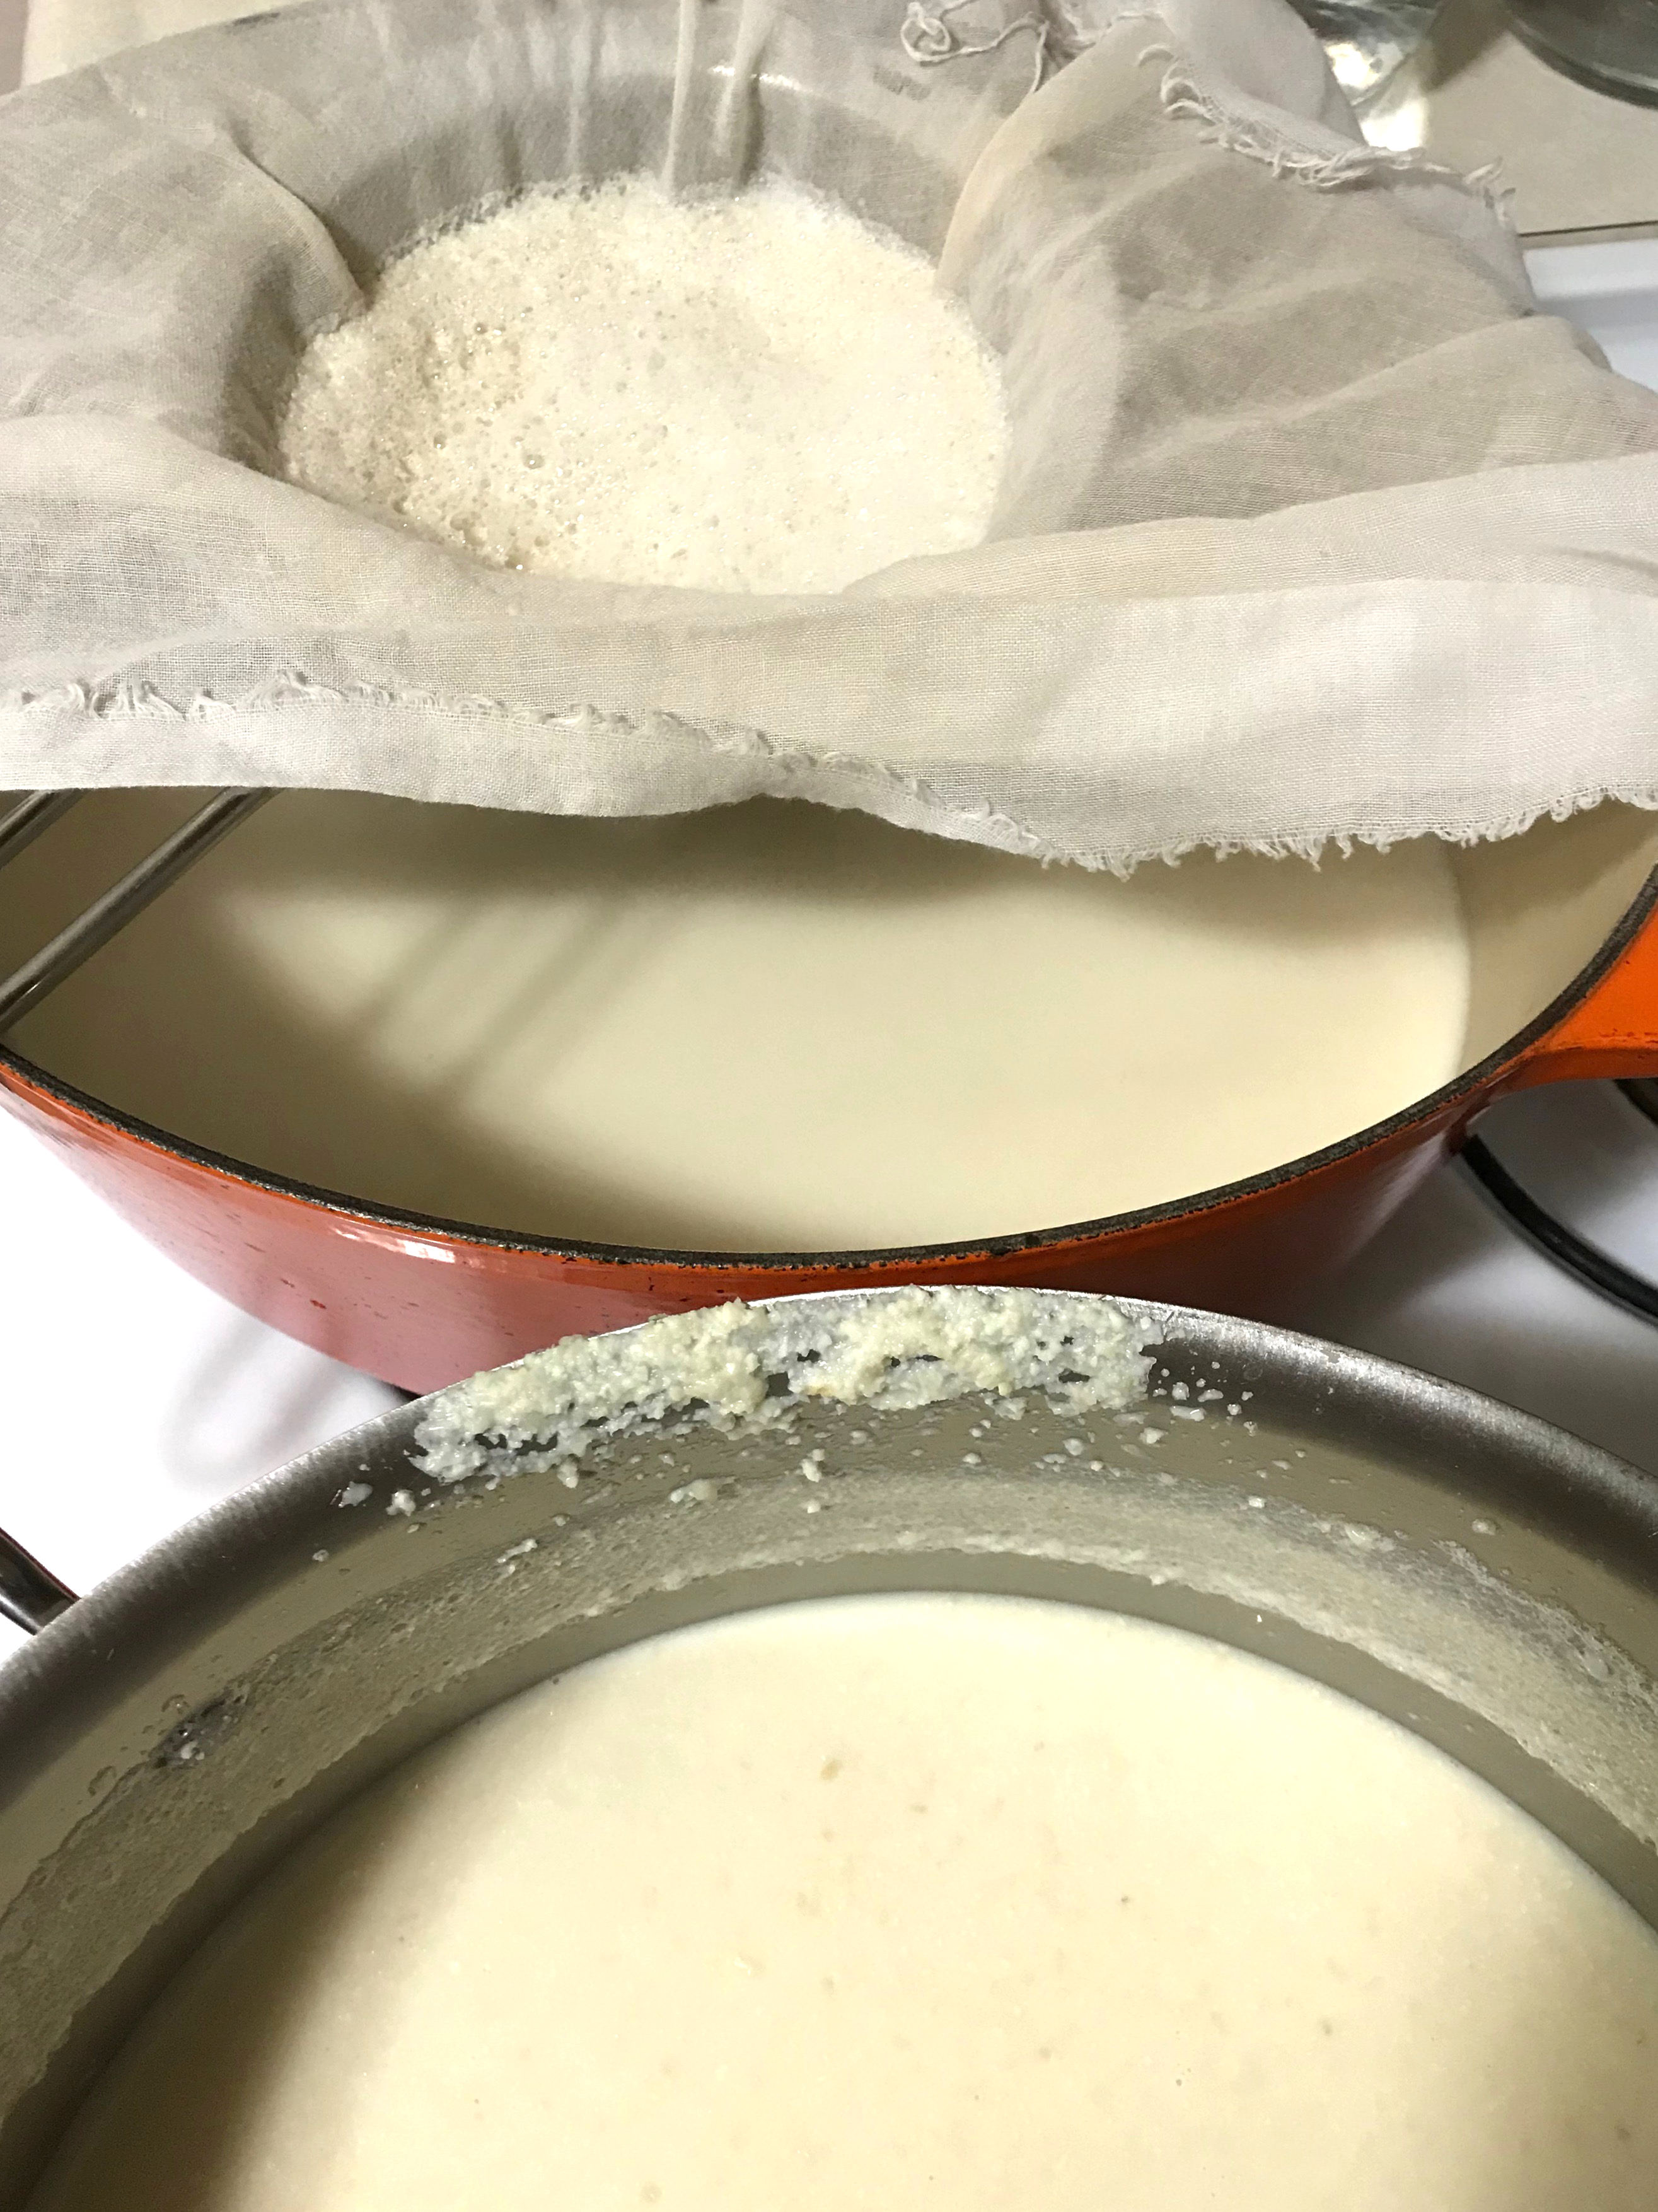 straining homemade soy milk